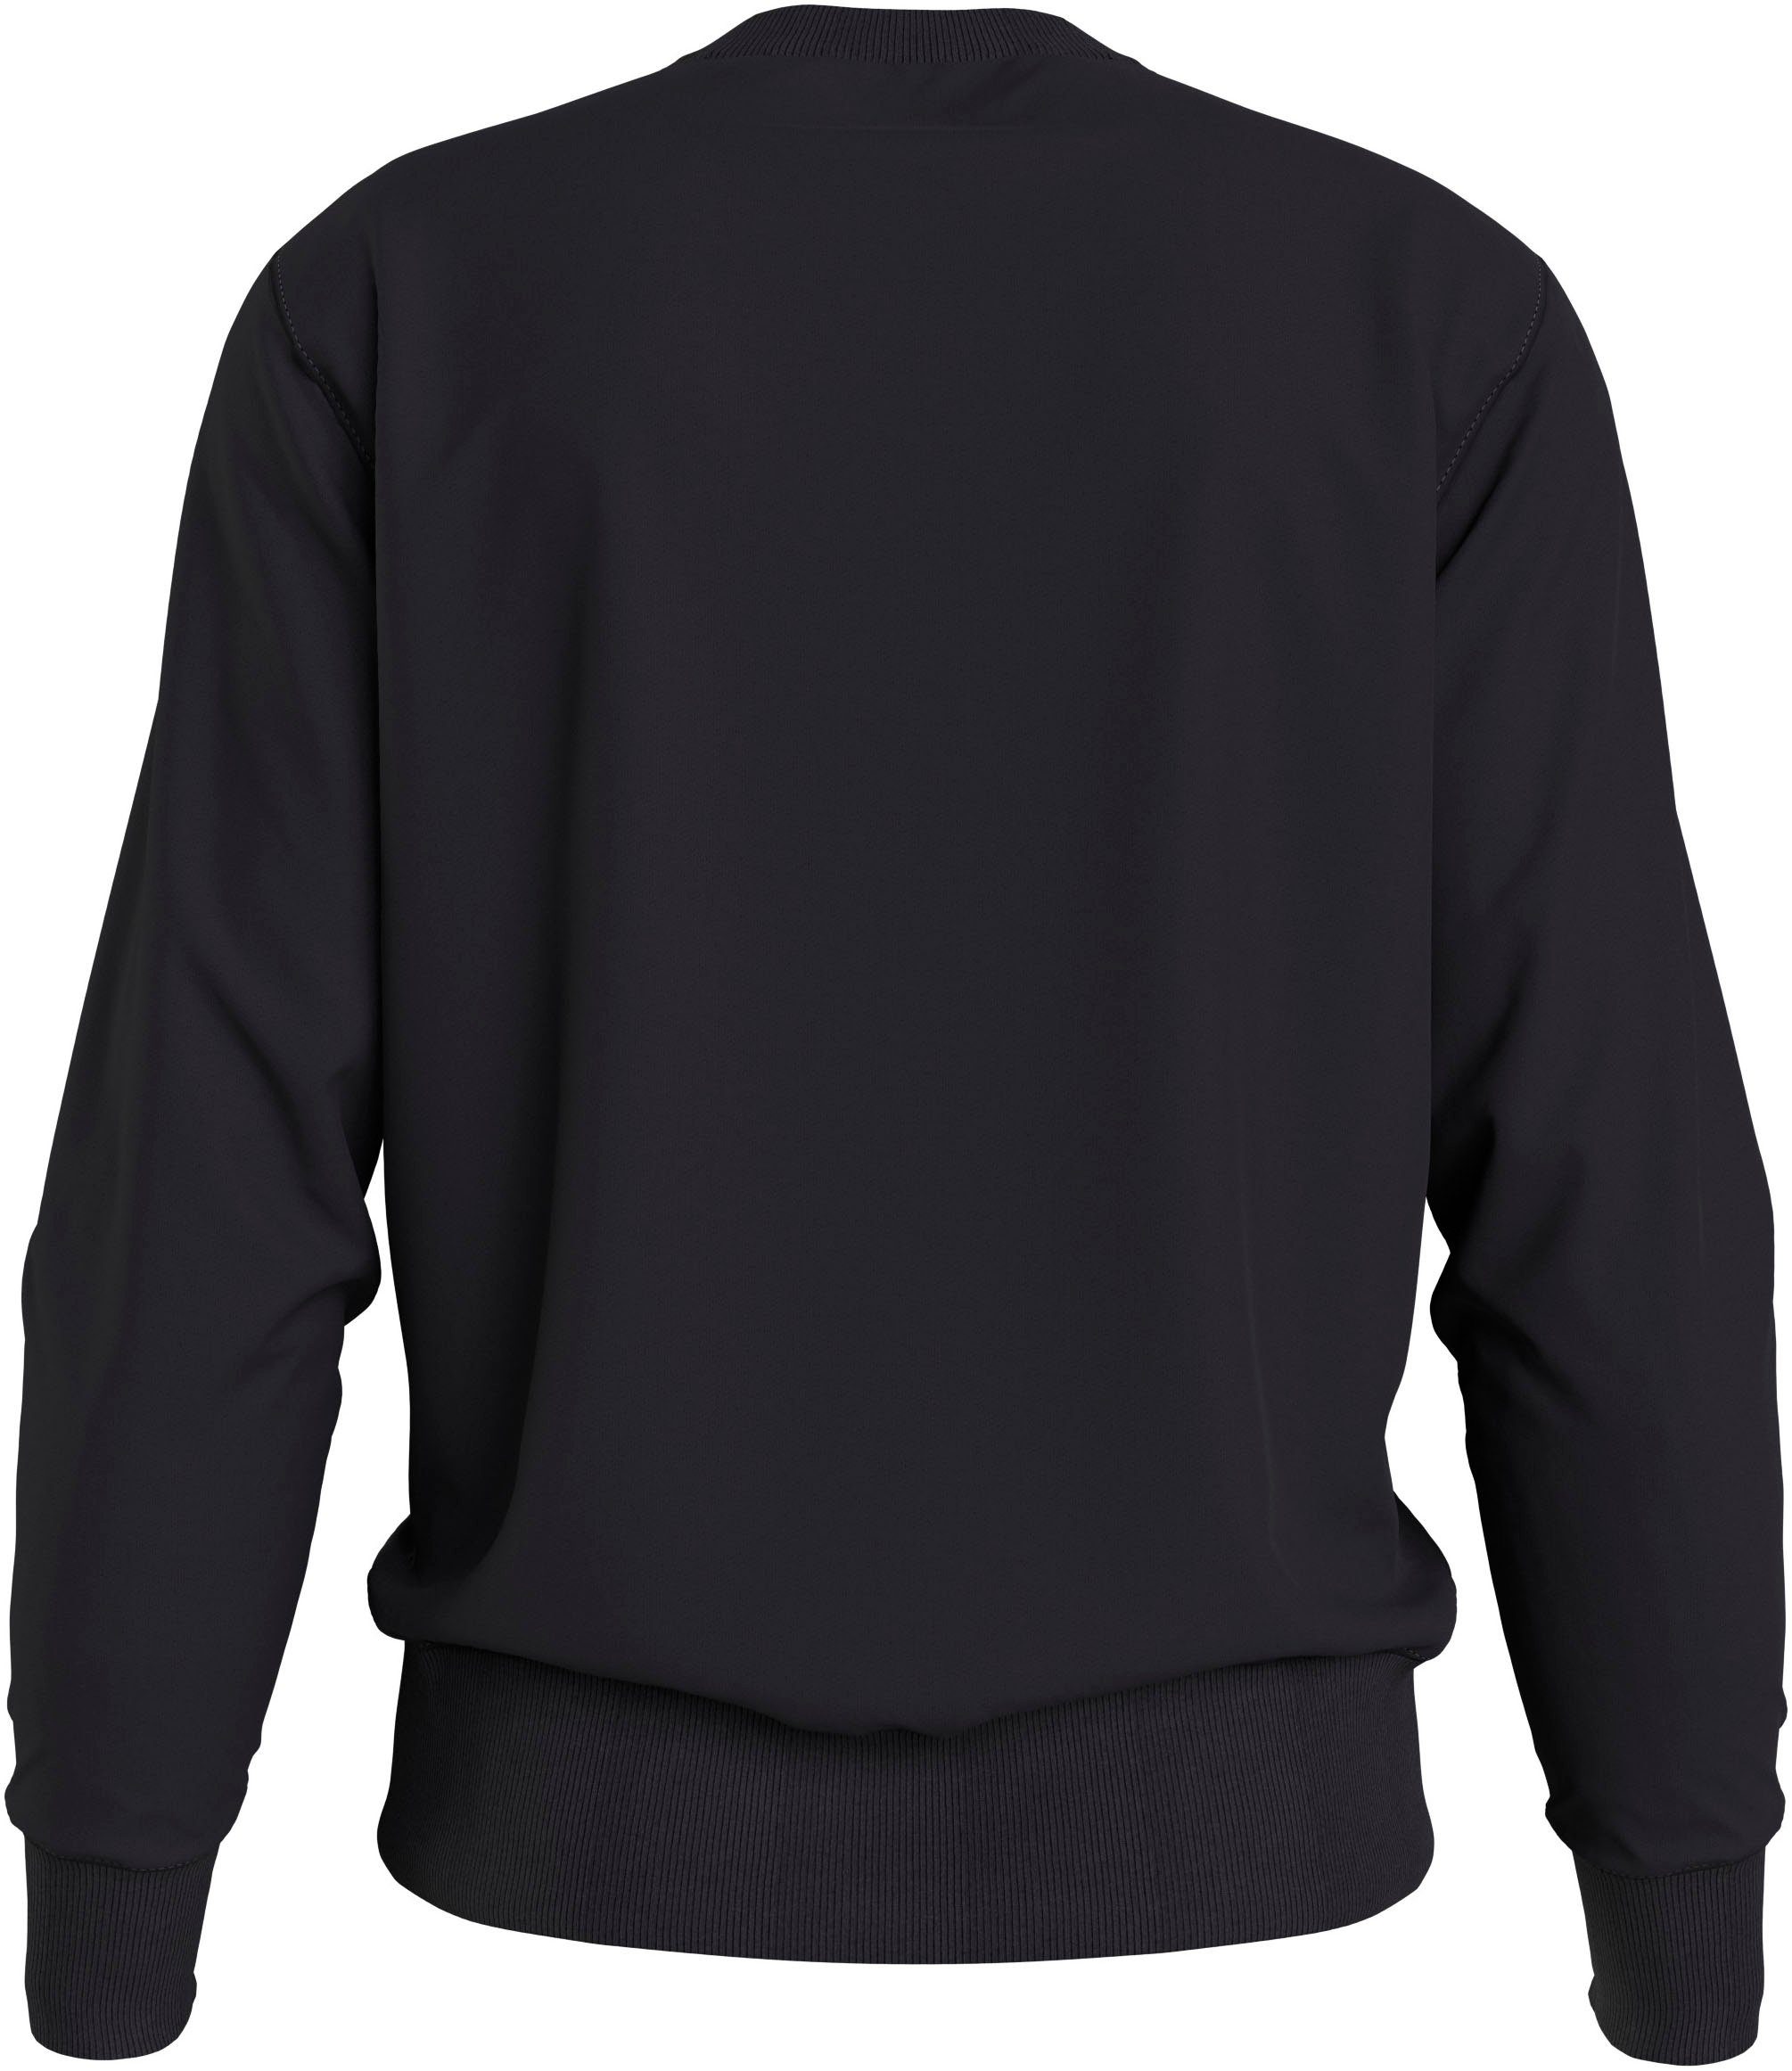 Jeans CREW FUTURE Calvin NECK Klein Ck MOTION GRAPHIC Black Sweatshirt